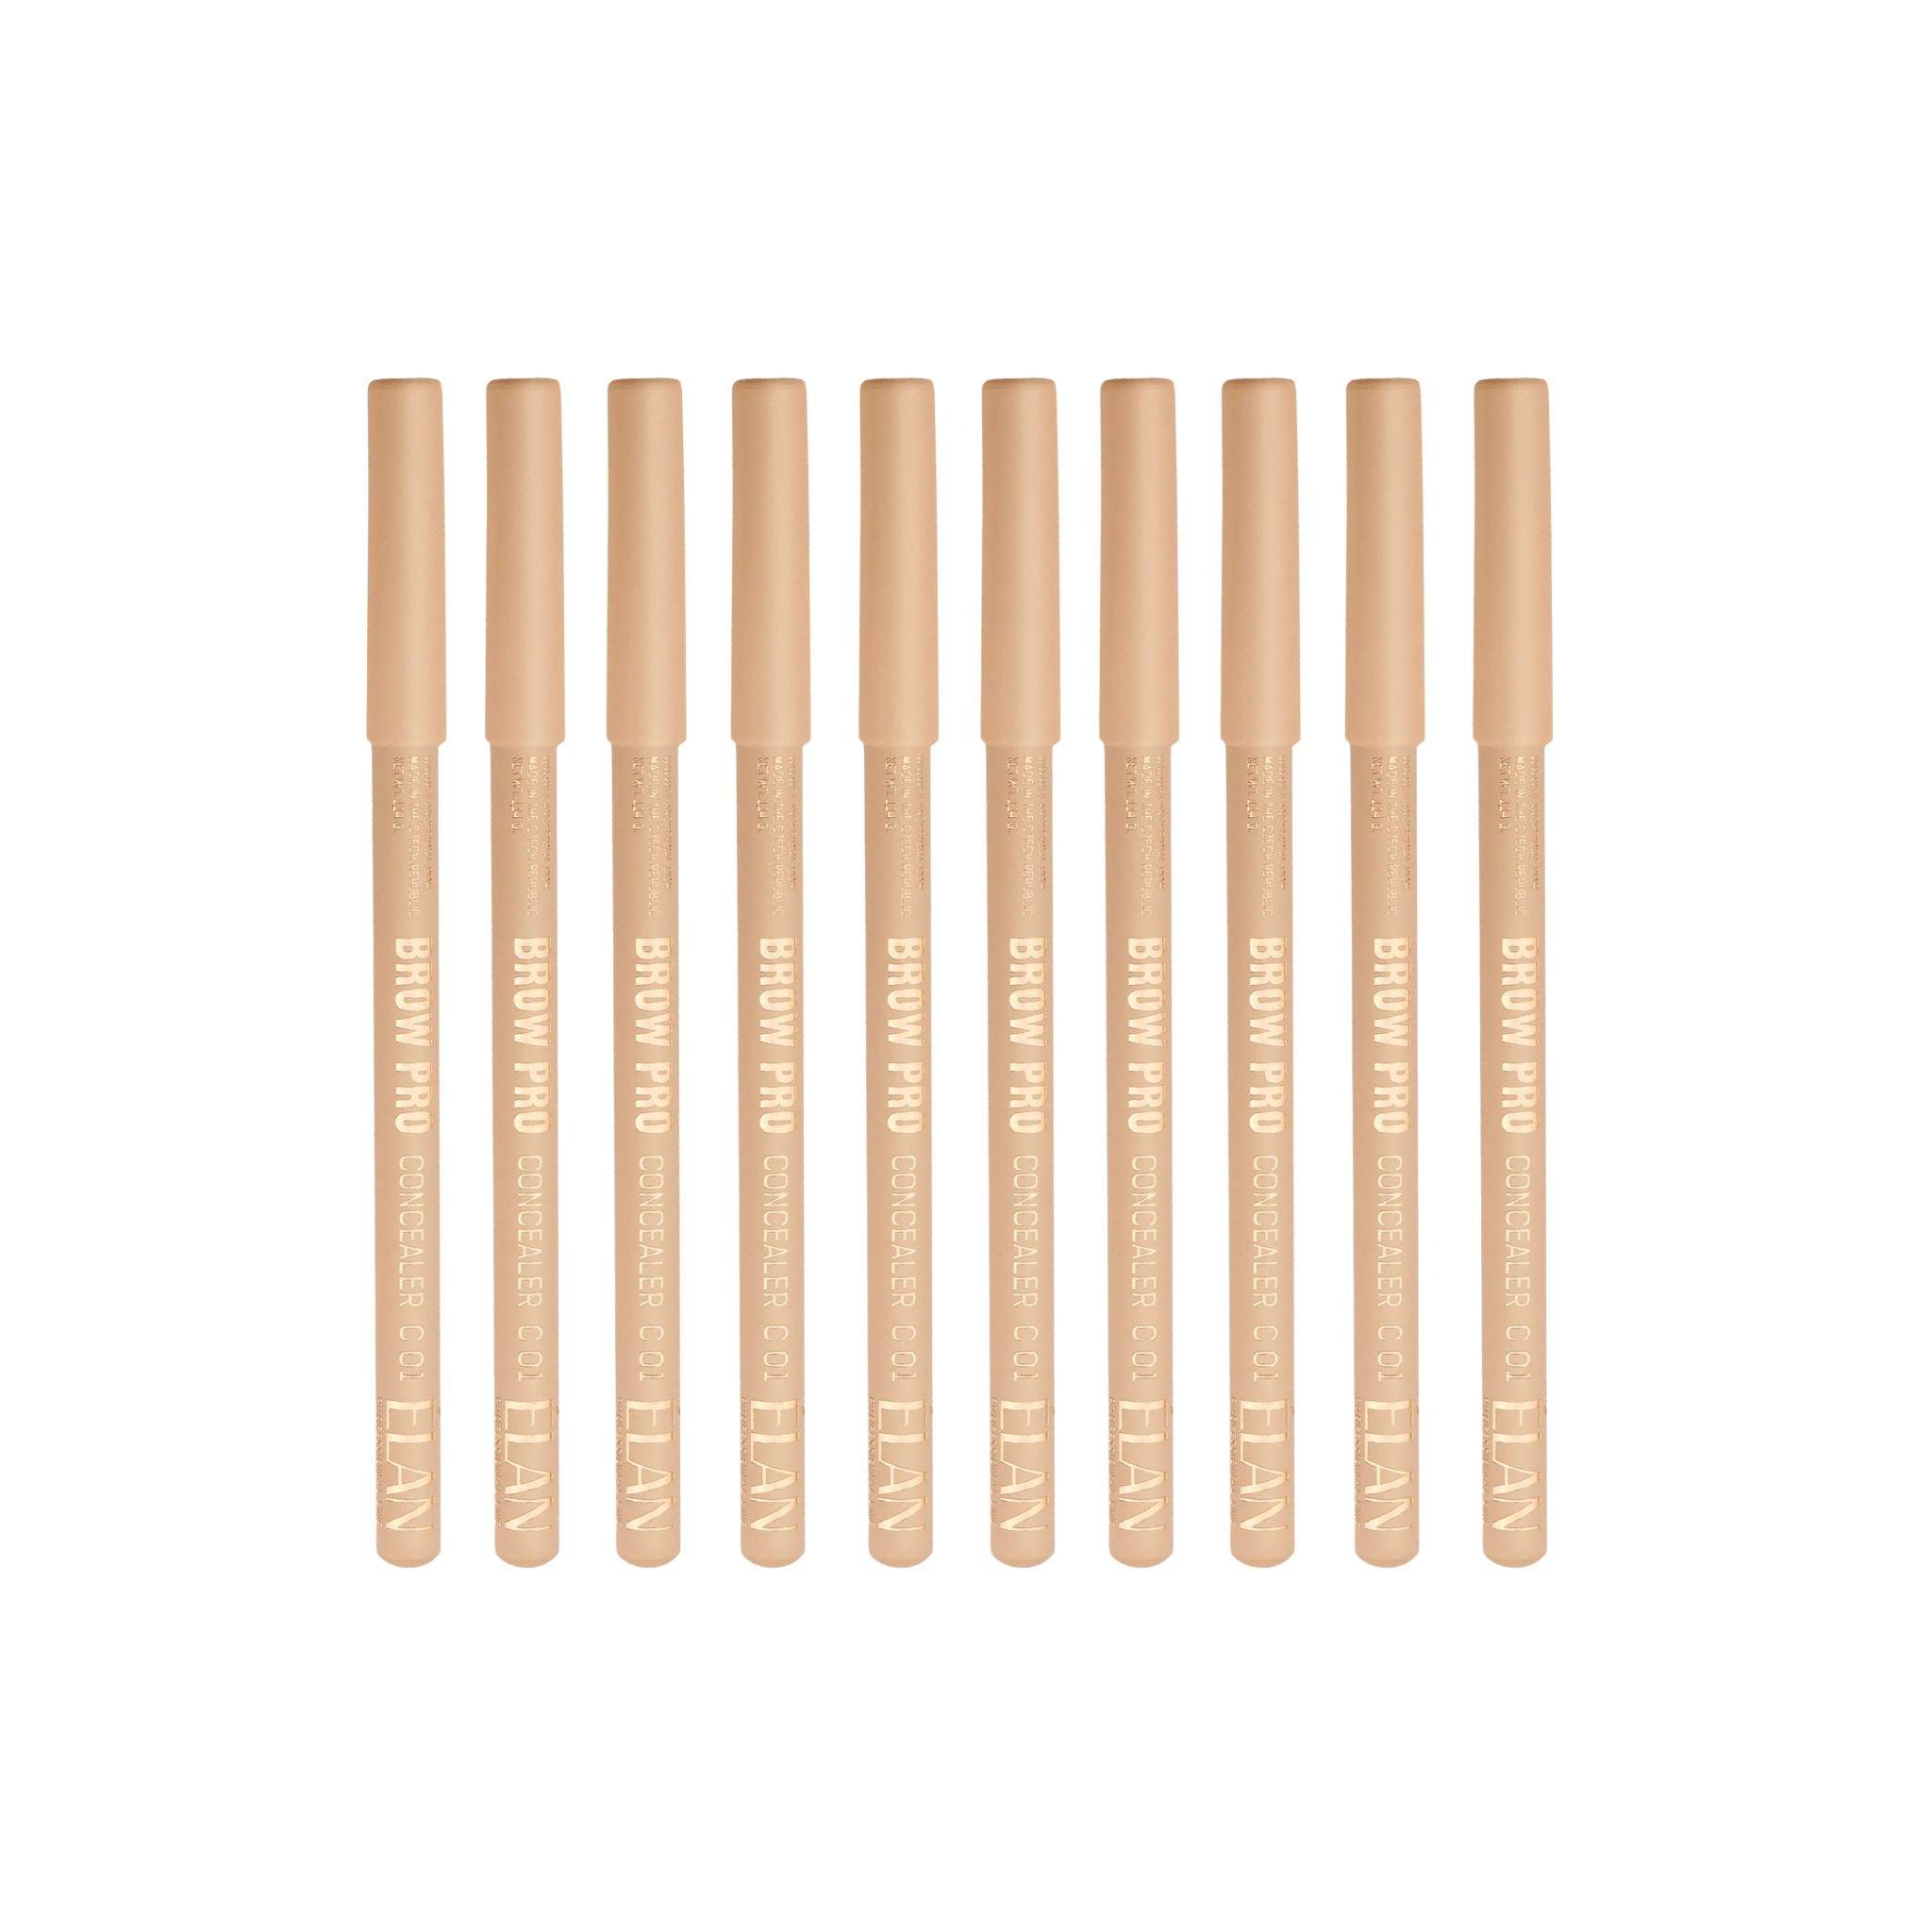 Elan Multi-Purpose Concealer Pencil Retail Bundle